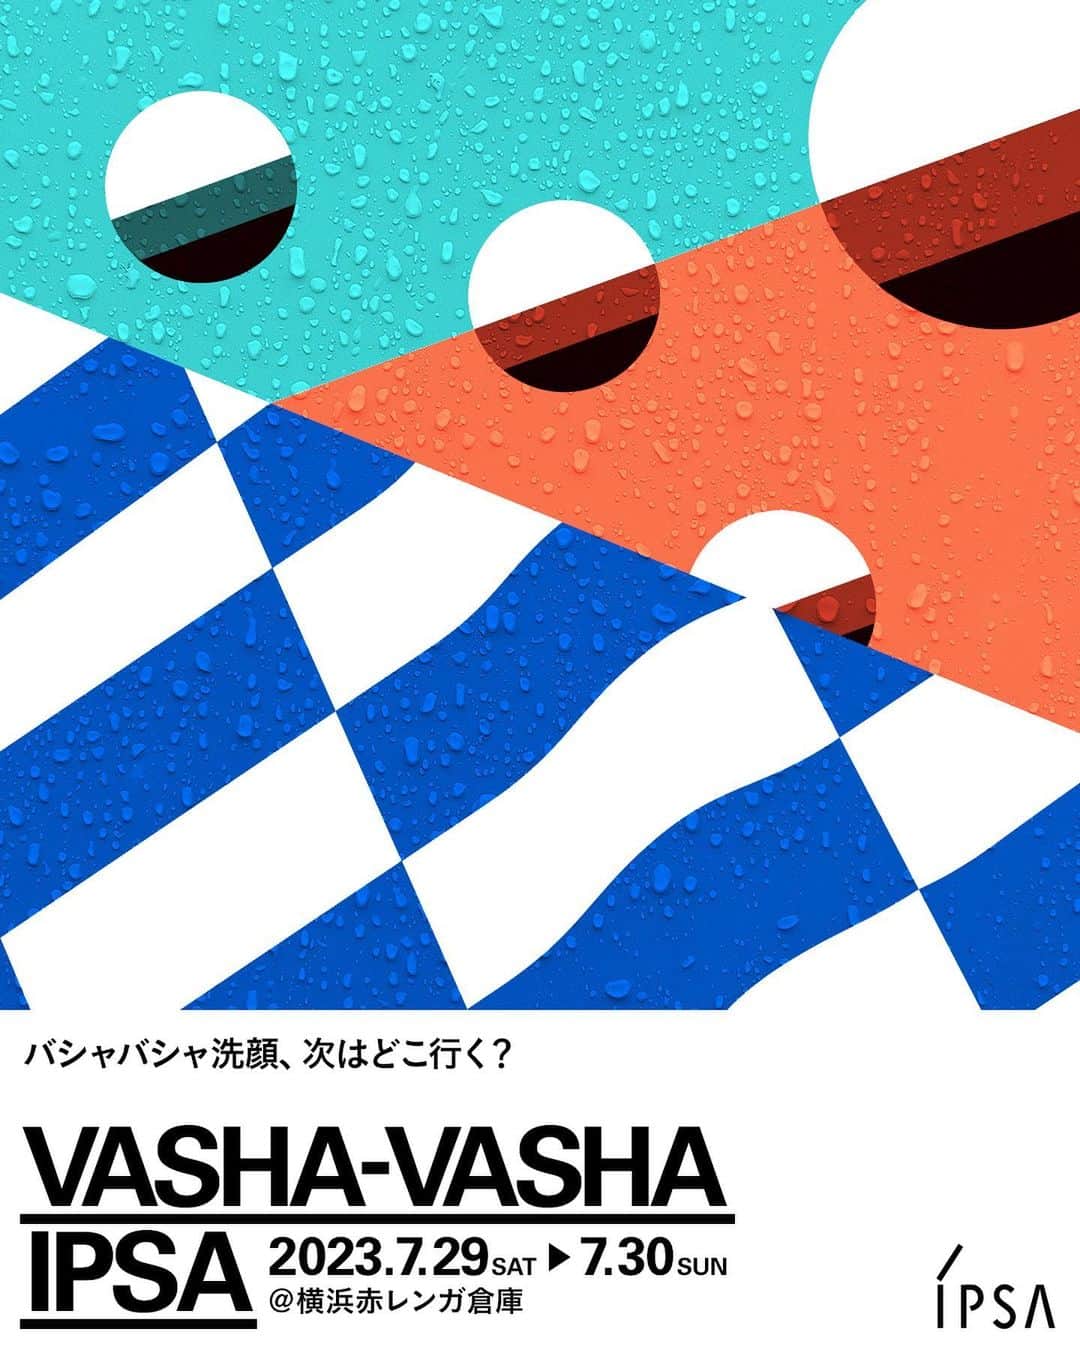 IPSA Japanのインスタグラム：「"横浜赤レンガにイプサブースが出現"   横浜赤レンガ倉庫で行われる日本最大級アーバンスポーツの祭典「YOKOHAMA URBAN SPORTS FESTIVAL ʼ23」にイプサが初出展。  その場で洗顔や日やけ止めが試せる体験ブース「VASHA-VASHA IPSA」もご用意しています。   さらに、はじめてイプサをお使いになる方にもぴったりな、夏の人気商品が詰まったオリジナルPake®付きのイベント限定キットも販売。 ライフスタイルの中で様々な⽤途で使⽤できるジップバッグはこれからの夏のお出かけにもぴったりです。   ぜひおひとりでも、ご友人やファミリーでもお気軽にお越しください。 フェスティバルはすべて入場・観覧無料で、盛りだくさんのコンテンツをお楽しみいただけます。   -----------------   【日程】2023/7/29(土)～7/30(日) 11:00-20:00 【会場】横浜赤レンガ倉庫イベント広場 【入場料】無料   ＜YUSF限定 ミニアクアキット＞ 税込3,080円(本体2,800円) 〇ザ・タイムR アクア 特製サイズ 100mL　 〇オリジナルPake® Lサイズ(紐つき)   ＜YUSF限定　スキンケアトライアルキット＞ 税込2,530円(本体2,300円) 〇洗顔料 特製サイズ 3種から1品選択 〇ザ・タイムR アクア 特製サイズ 30mL 〇プロテクター マルチシールド 特製サイズ 9mL 〇オリジナルPake® Mサイズ（紐付き）   ※なくなり次第終了となります。   #IPSA #イプサ #横浜 #横浜赤レンガ倉庫 #横浜アーバンスポーツフェスティバル #yusf #夏フェス #スキンケア #スキンケアキット #洗顔 #洗顔スポット #日焼け止め #夏のイベント #アーバンスポーツ」